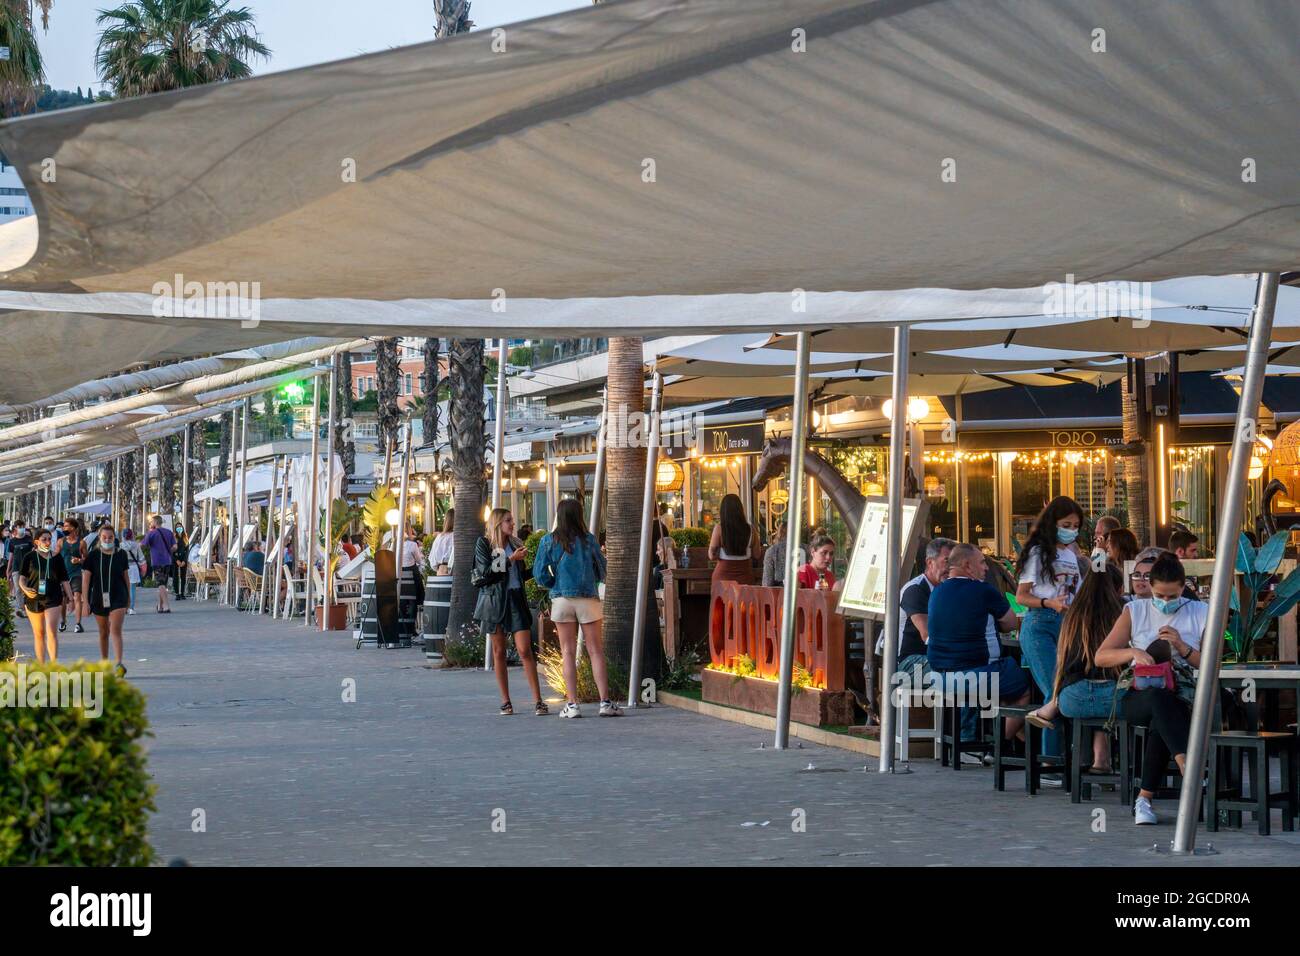 Restaurants and der Paseo de la Forala, Promenade, Blaue Stunde,  Malaga, Costa del Sol, Provinz Malaga, Andalusien, Spanien, Europa, Stock Photo